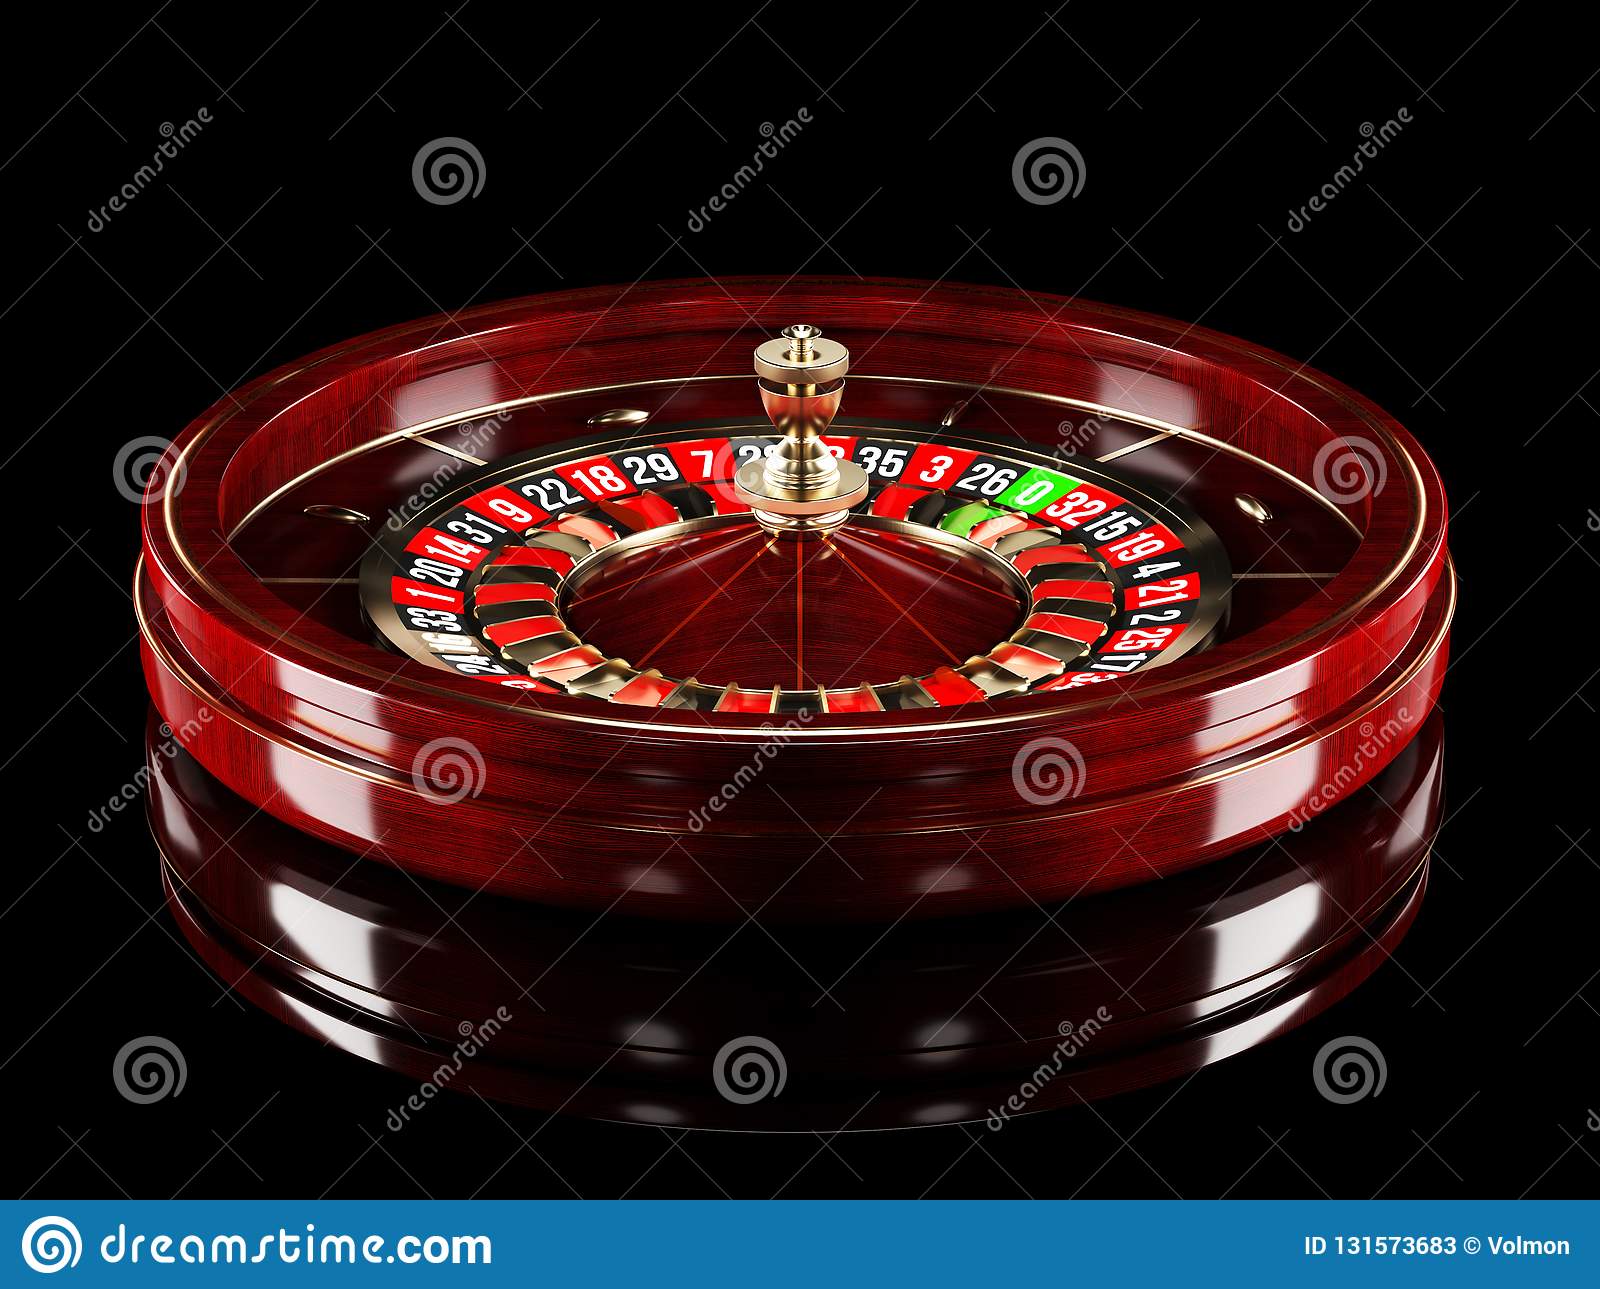 Азартмания играть бесплатно вход в казино